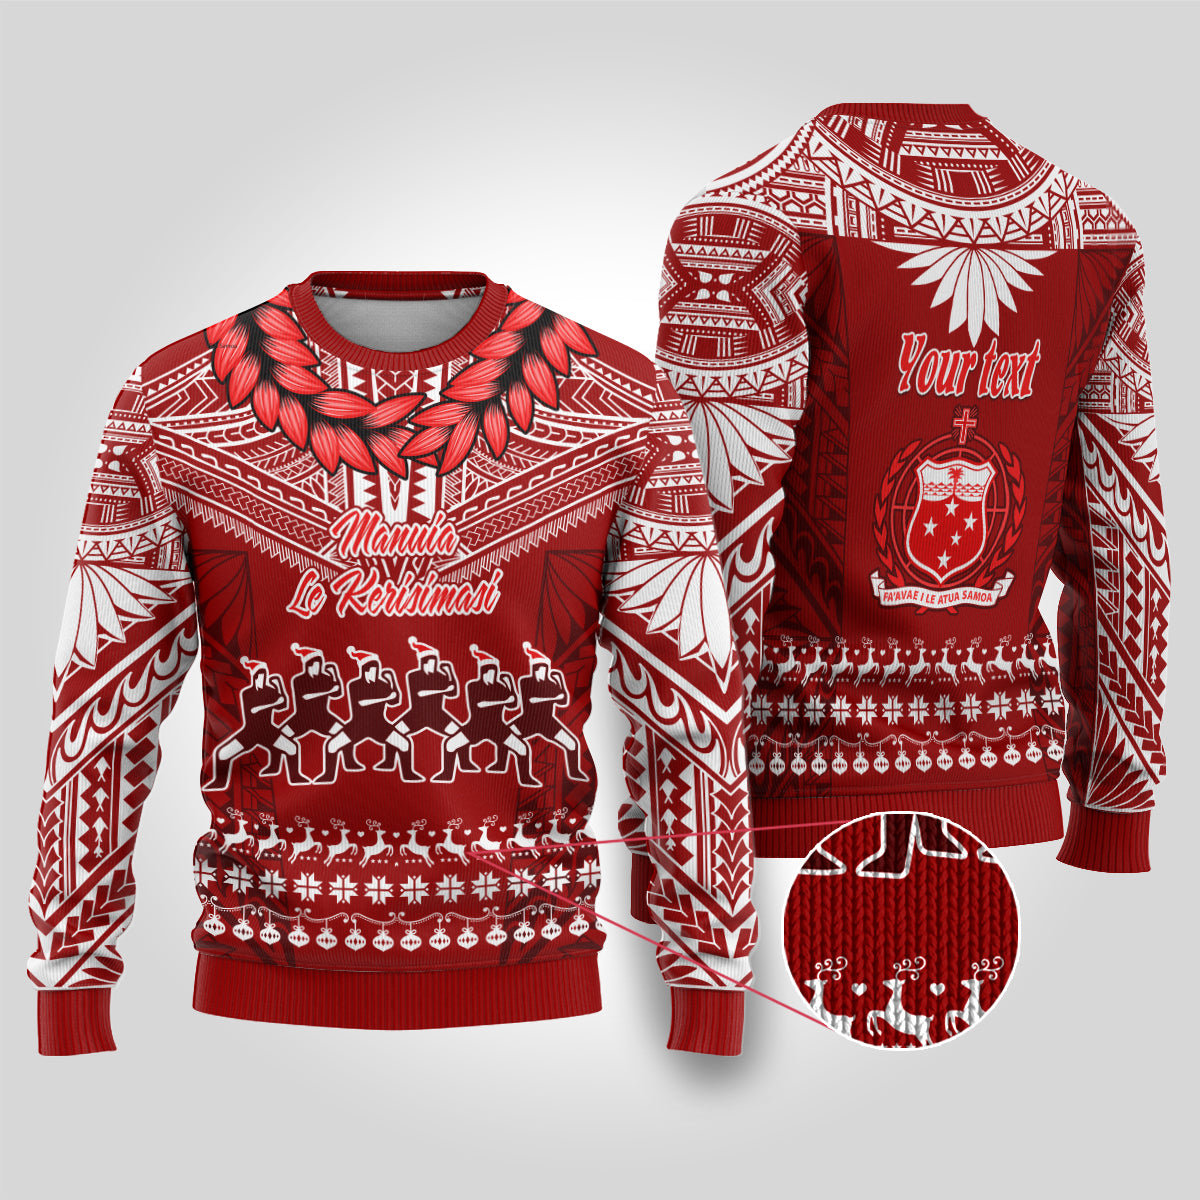 Personalised Toa Samoa Christmas Ugly Christmas Sweater Samoa Siva Tau Manuia Le Kerisimasi Red Vibe LT9 Red - Polynesian Pride